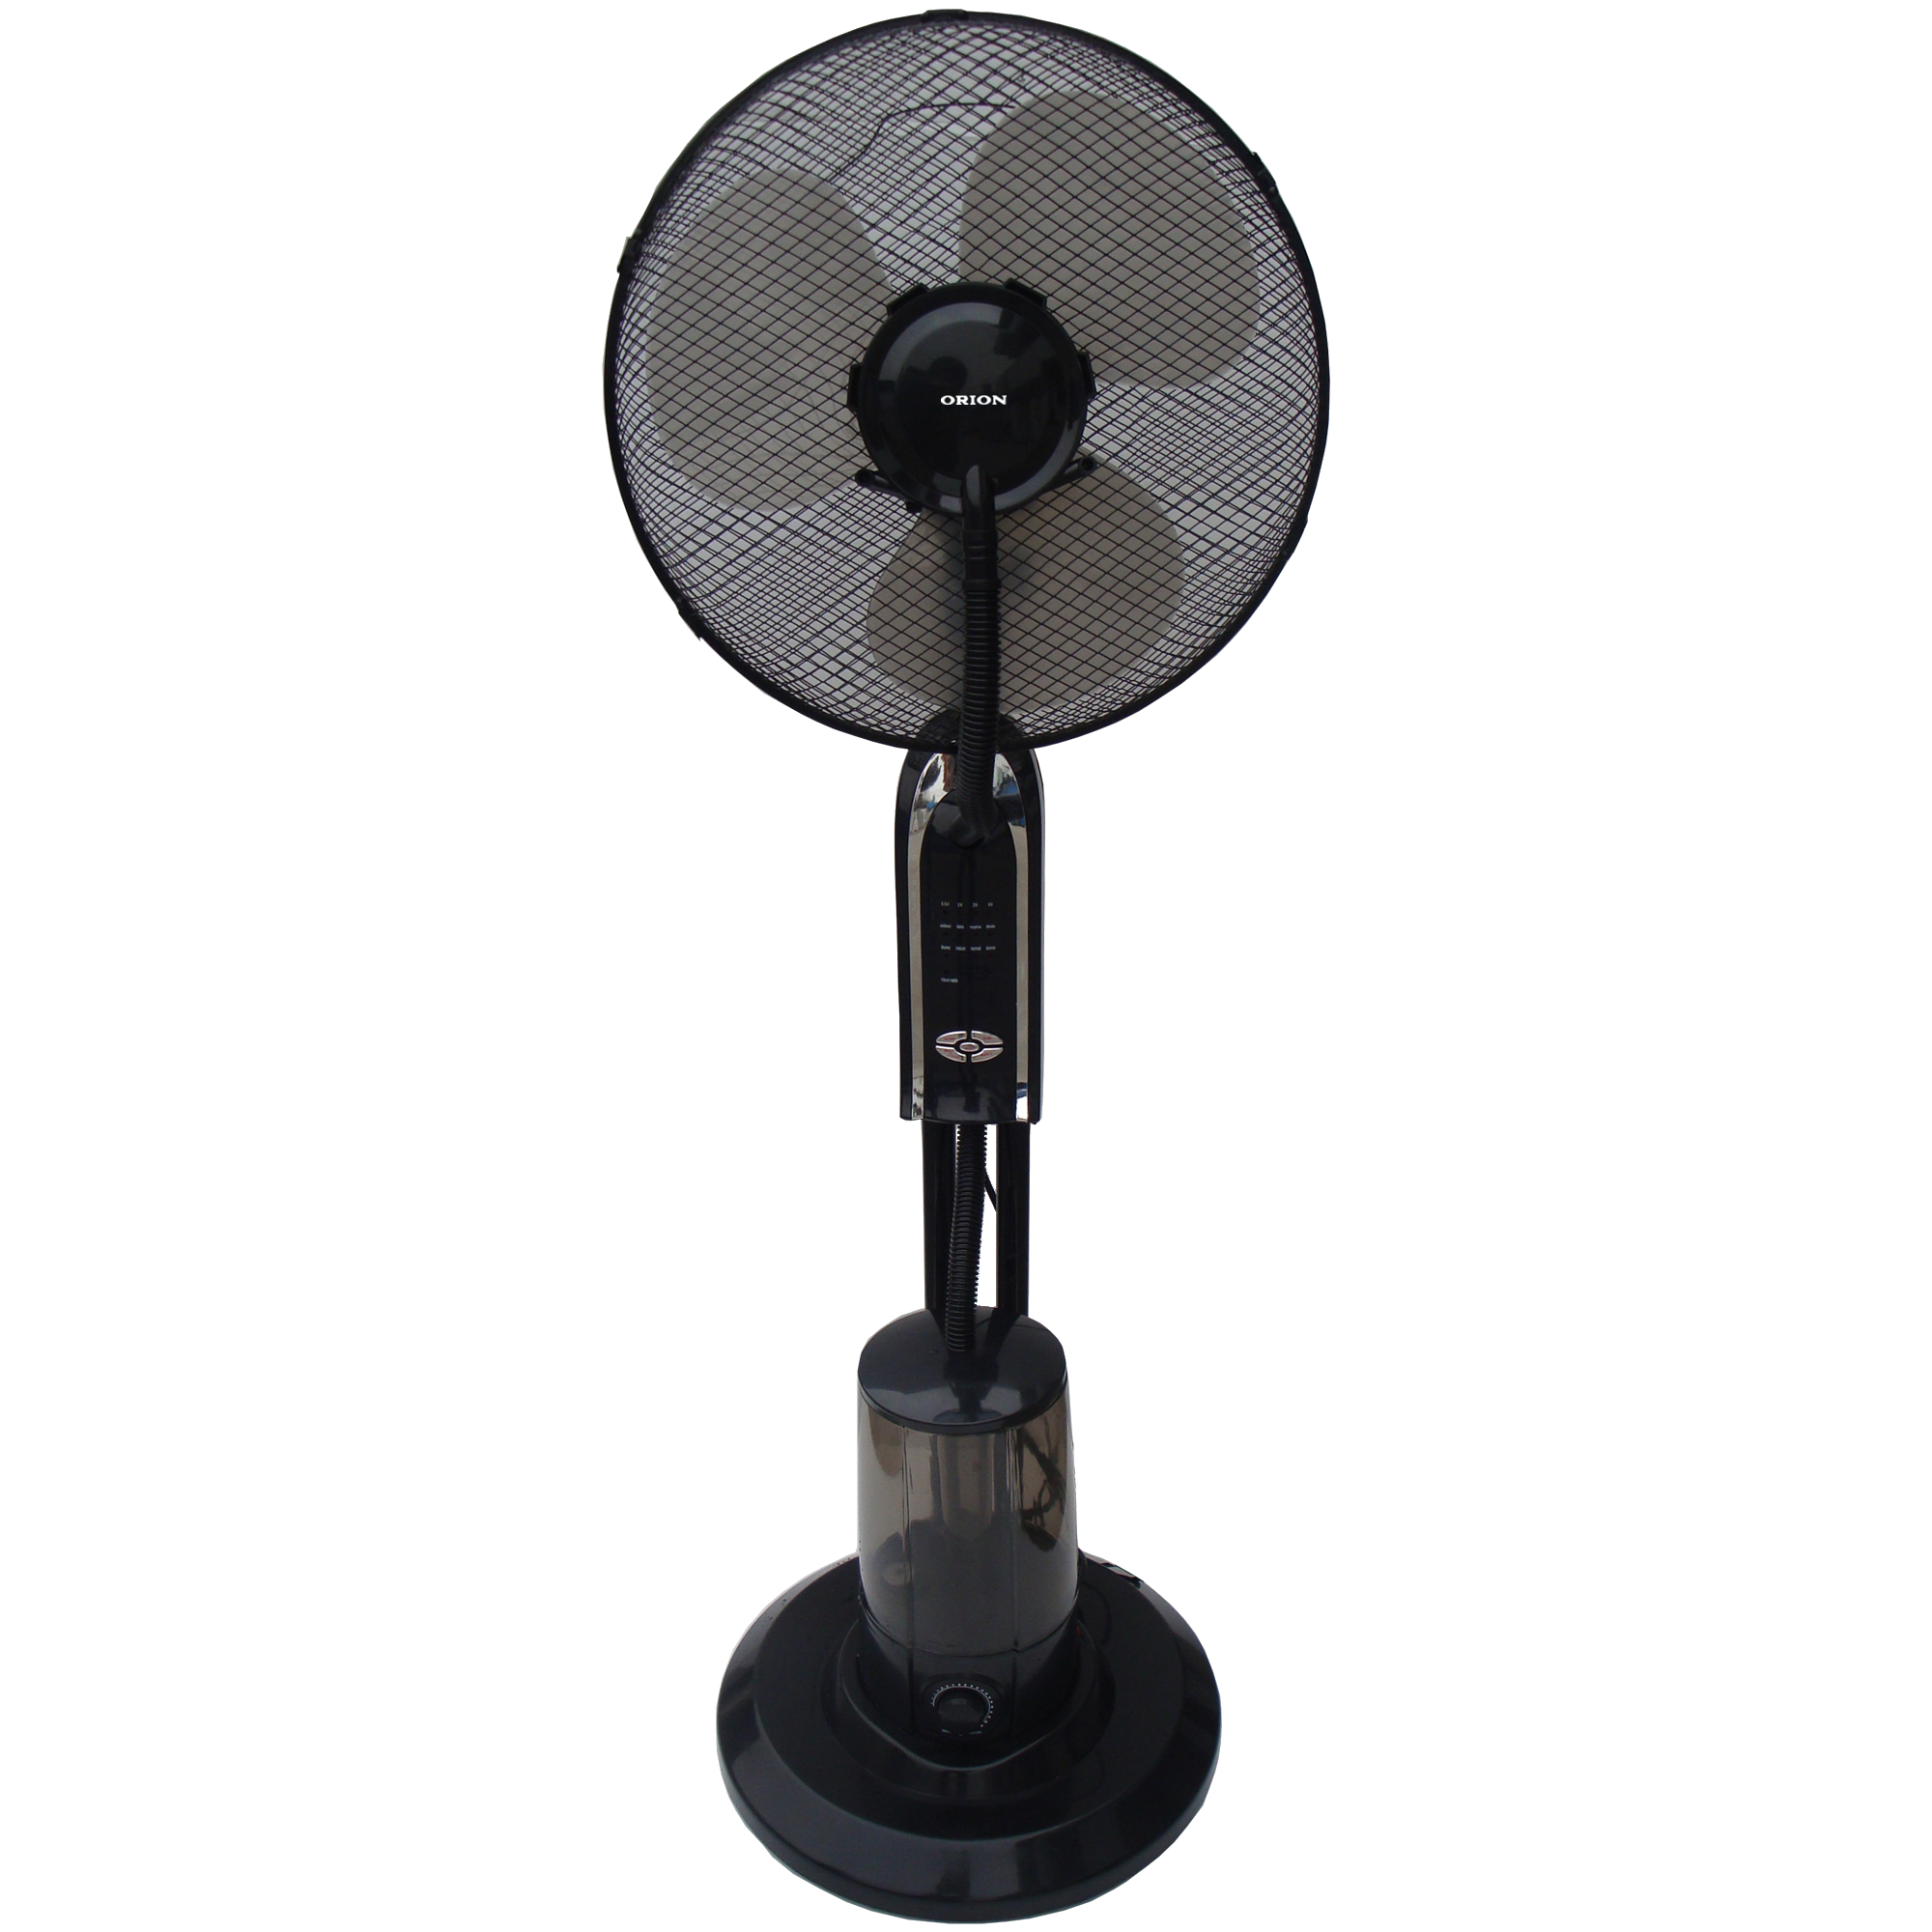 Охлаждение воды вентилятором. Напольный вентилятор Vitta GX-31g. Вентилятор с увлажнителем воздуха Mist-Fan om fs02. Вентилятор с увлажнителем Mist-Fan om FS 01. Напольный вентилятор AOX Mist Fan MF 26st.